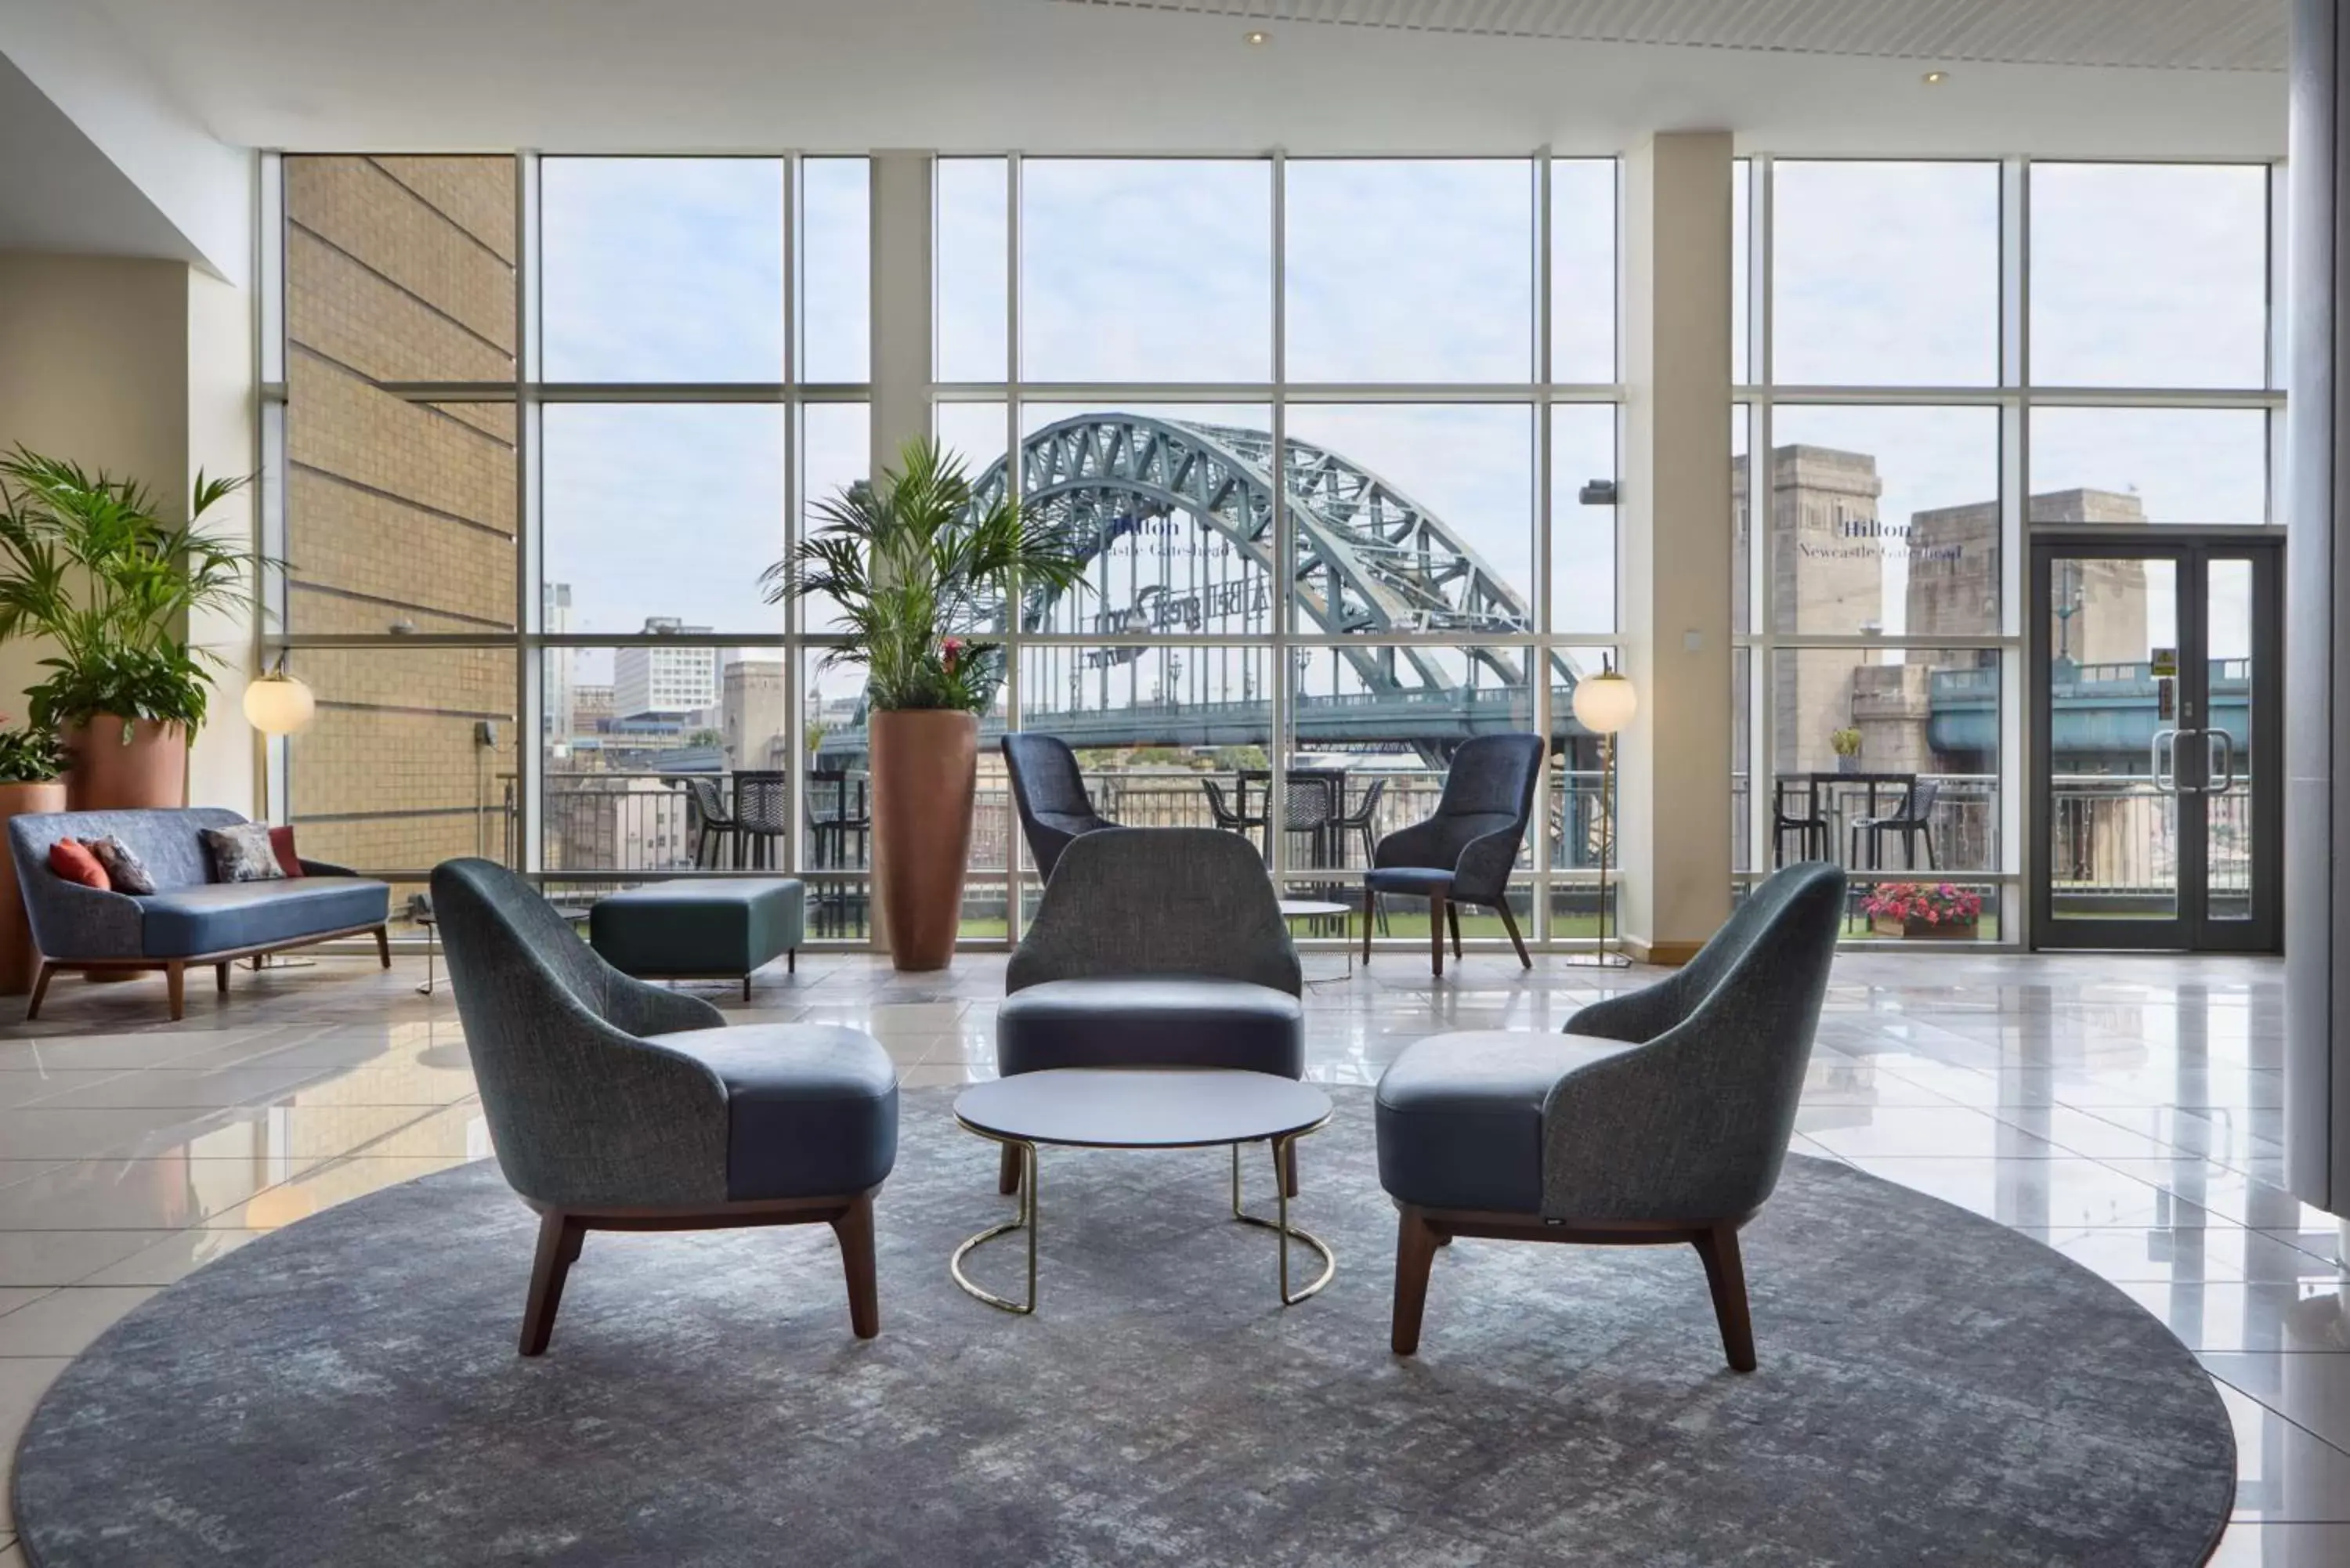 Lobby or reception in Hilton Newcastle Gateshead